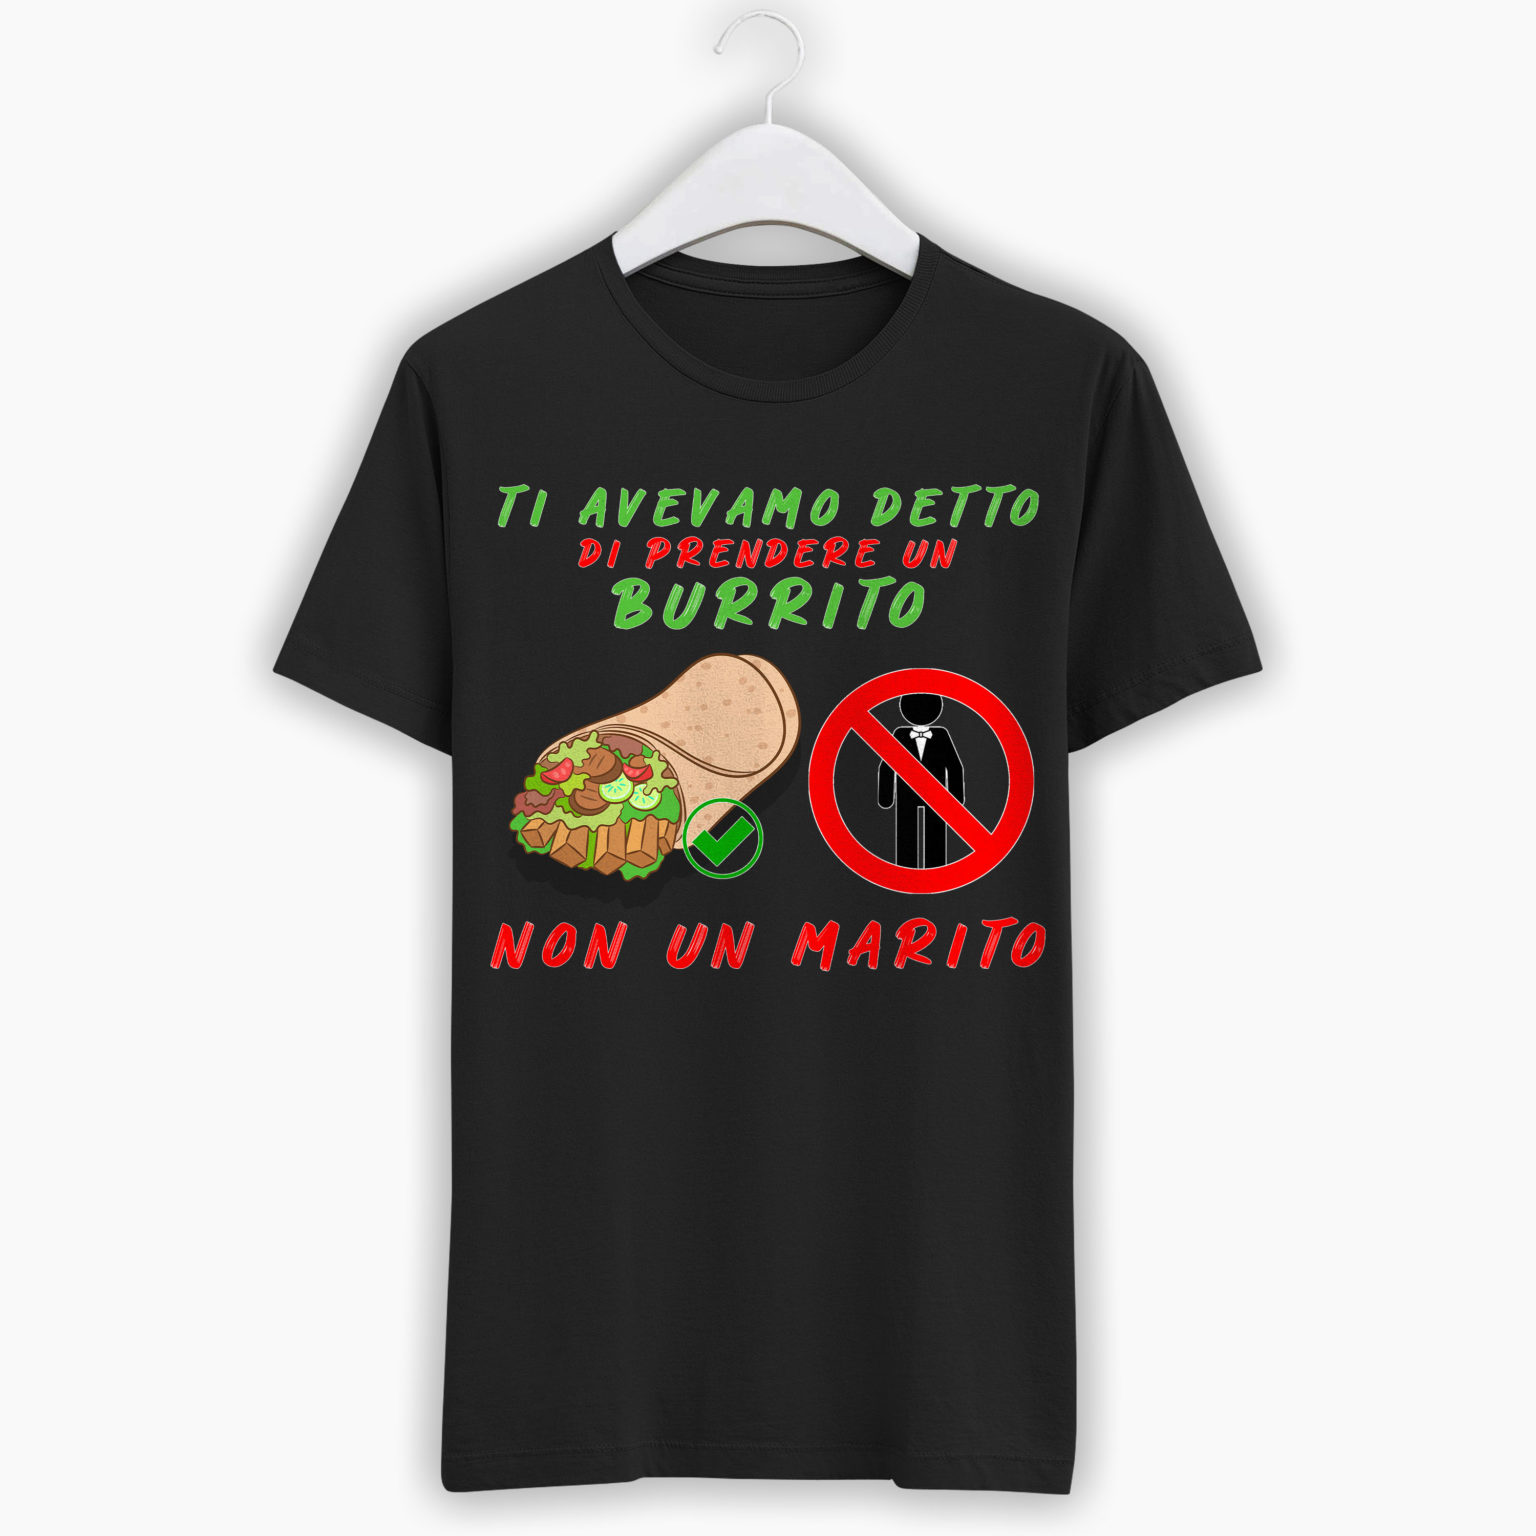 T-Shirt Addio Al Nubilato – Ti avevamo detto di prendere un burrito, non un marito